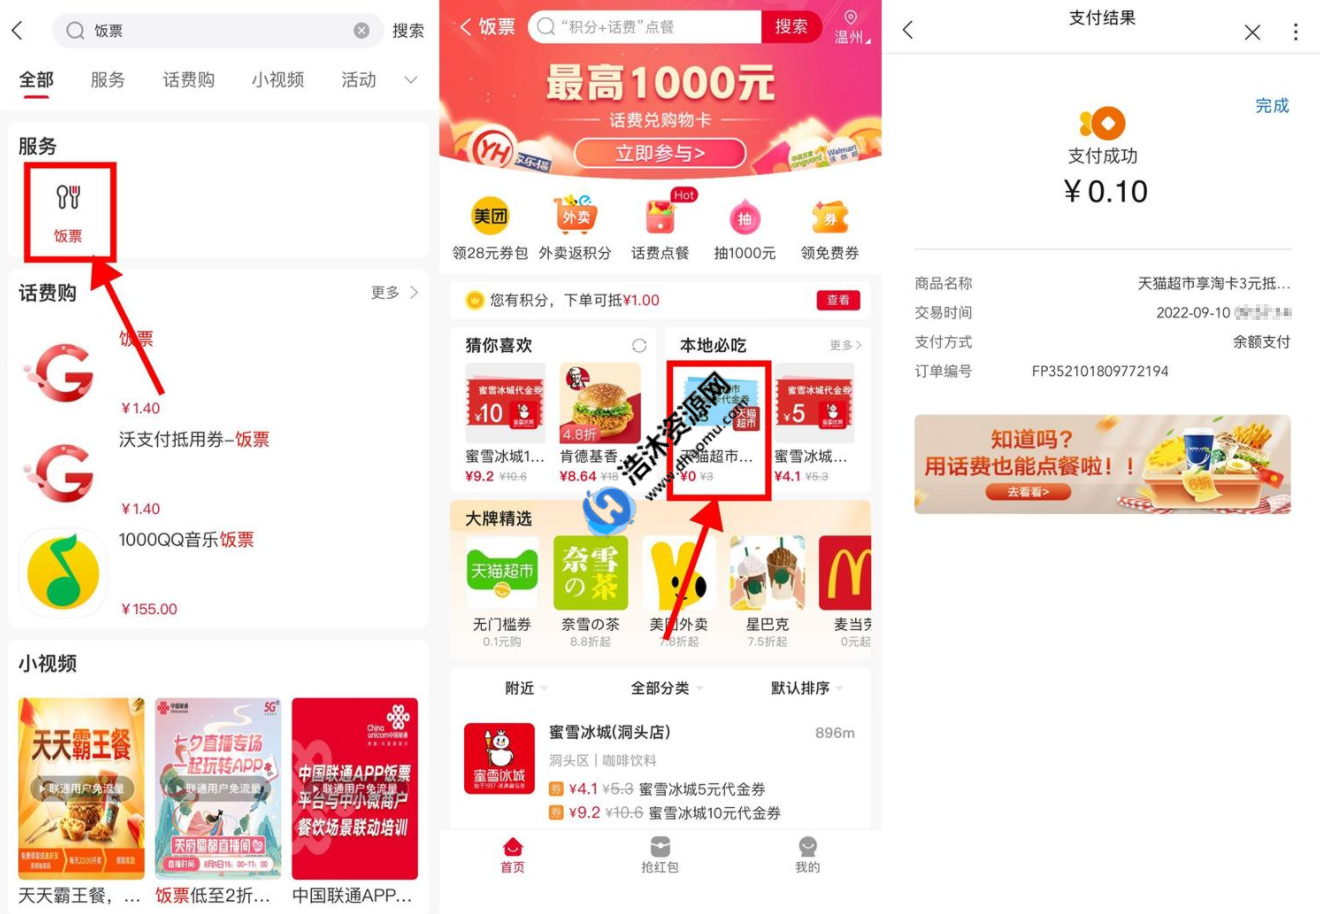 中国联通搜索饭票0.1元购买3元天猫超市卡